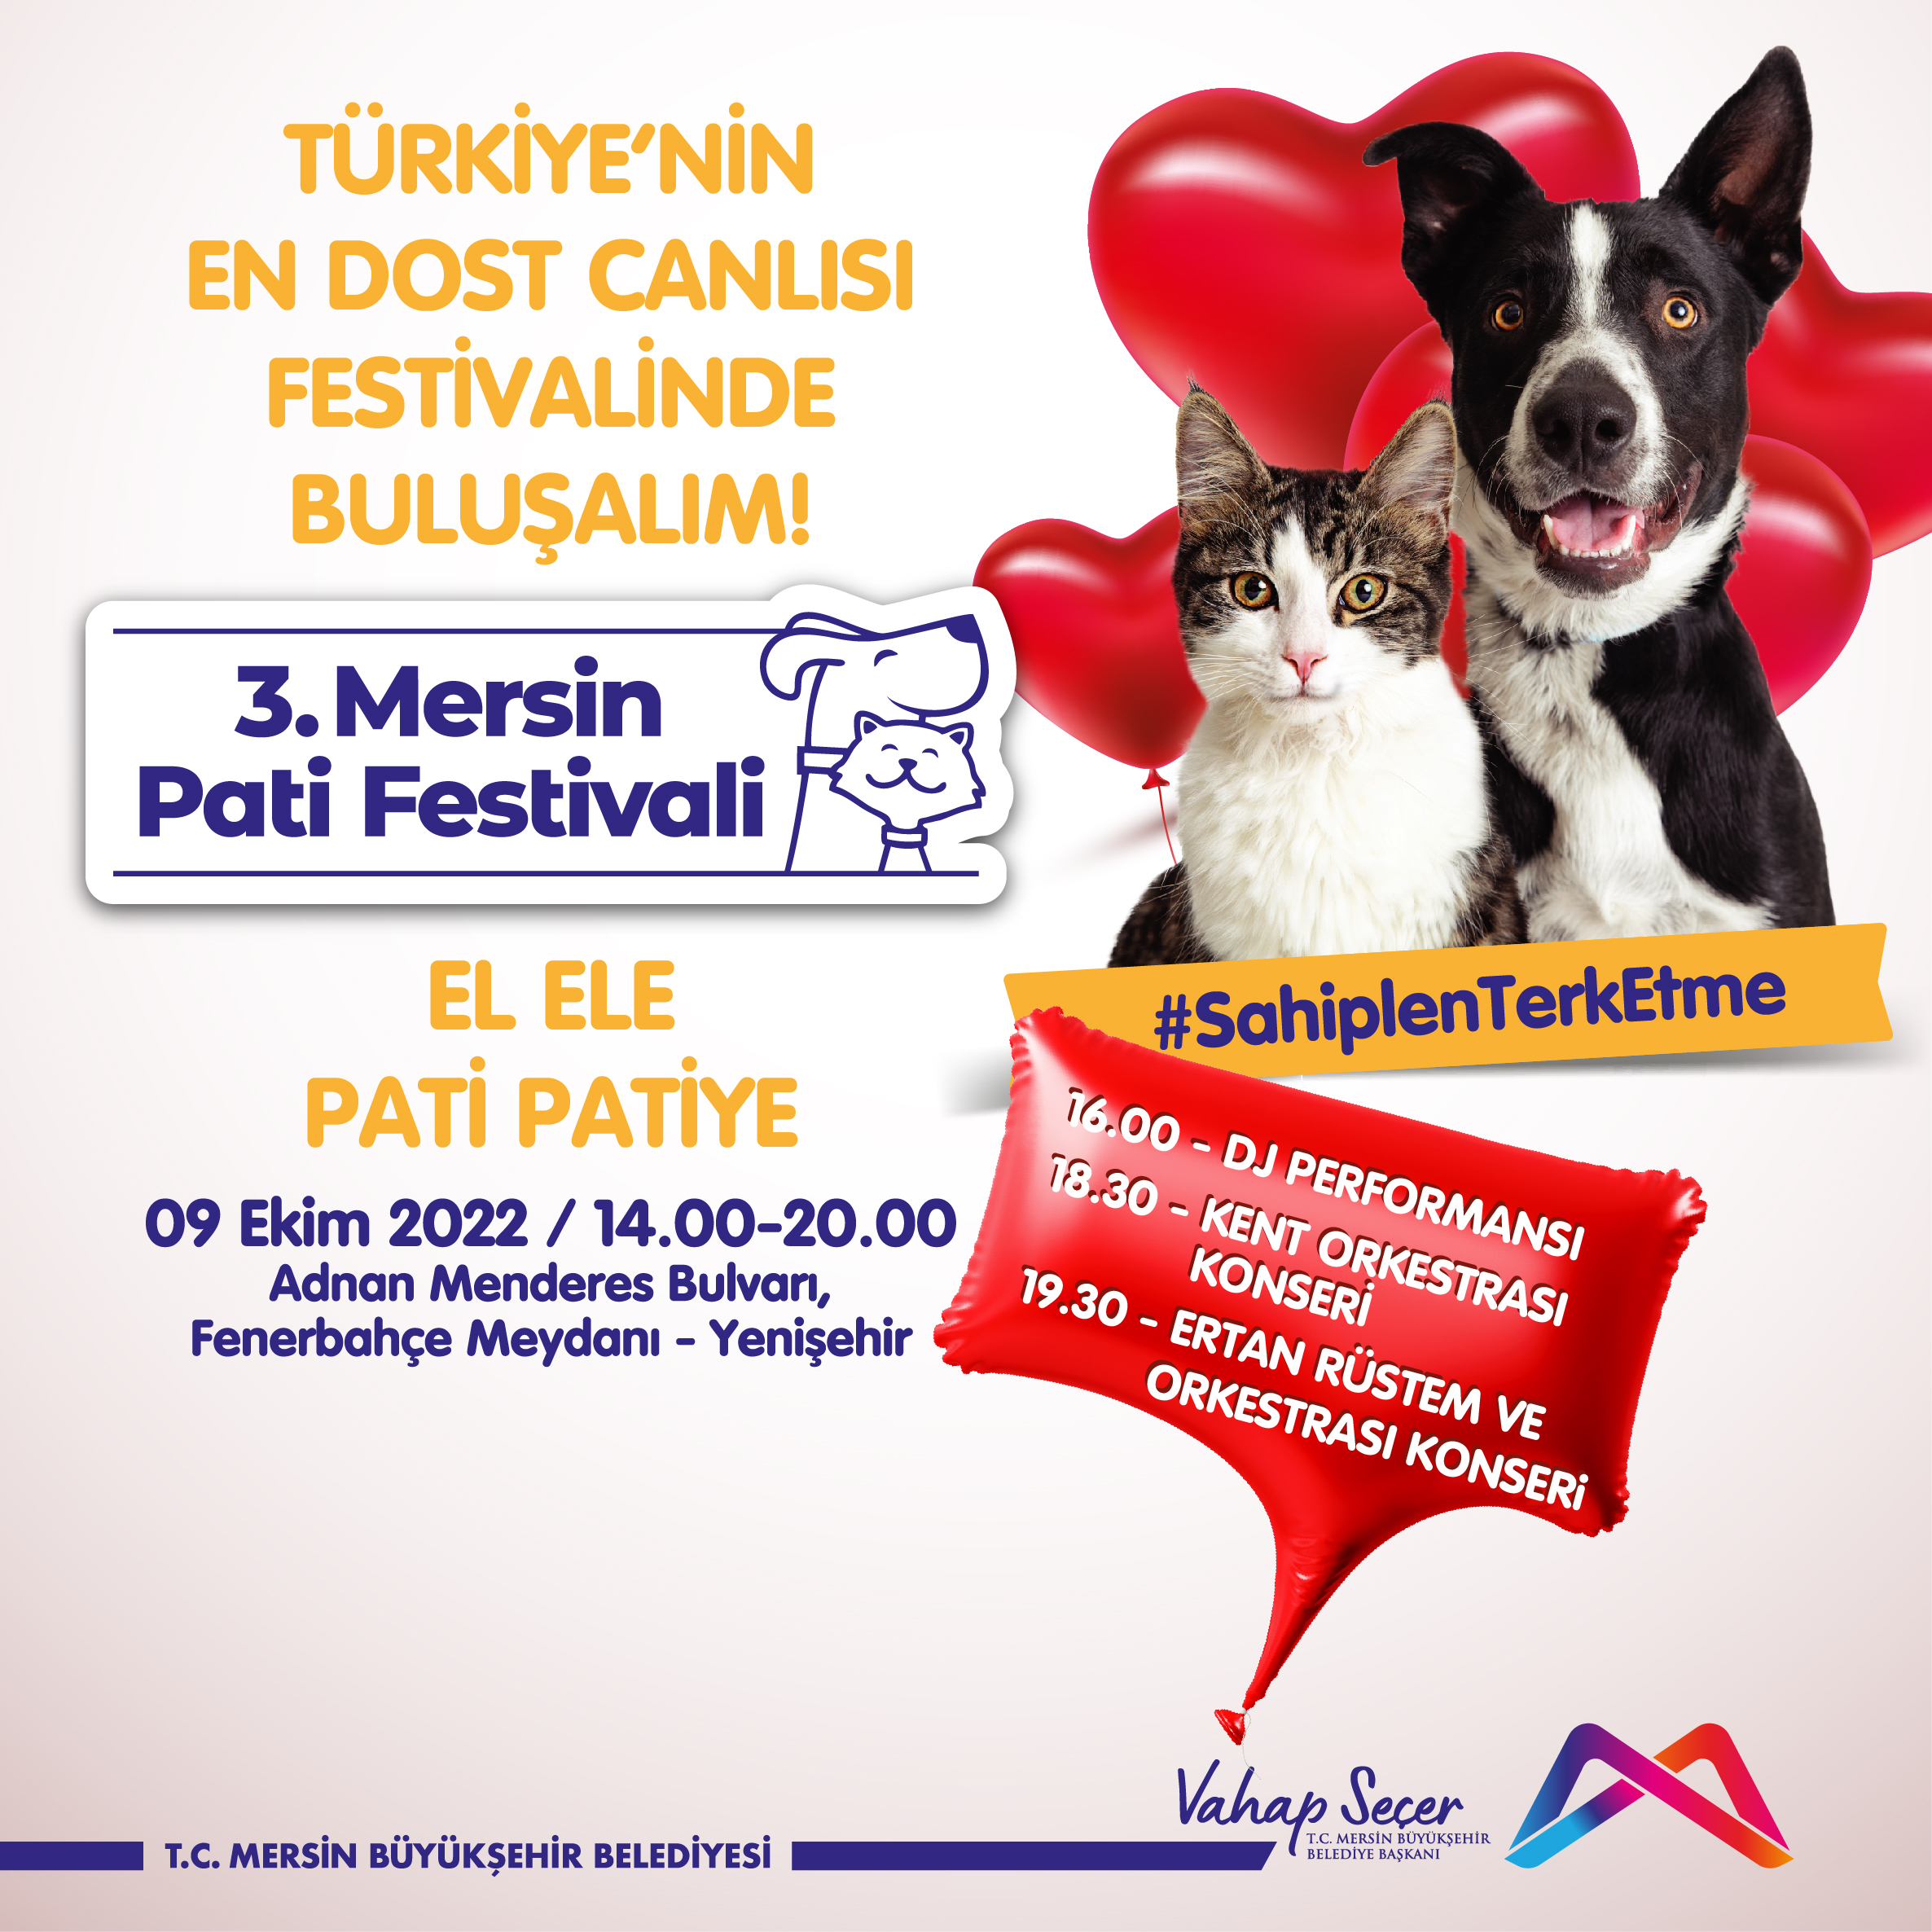 Türkiye'nin en dost canlısı festivalinde buluşalım!